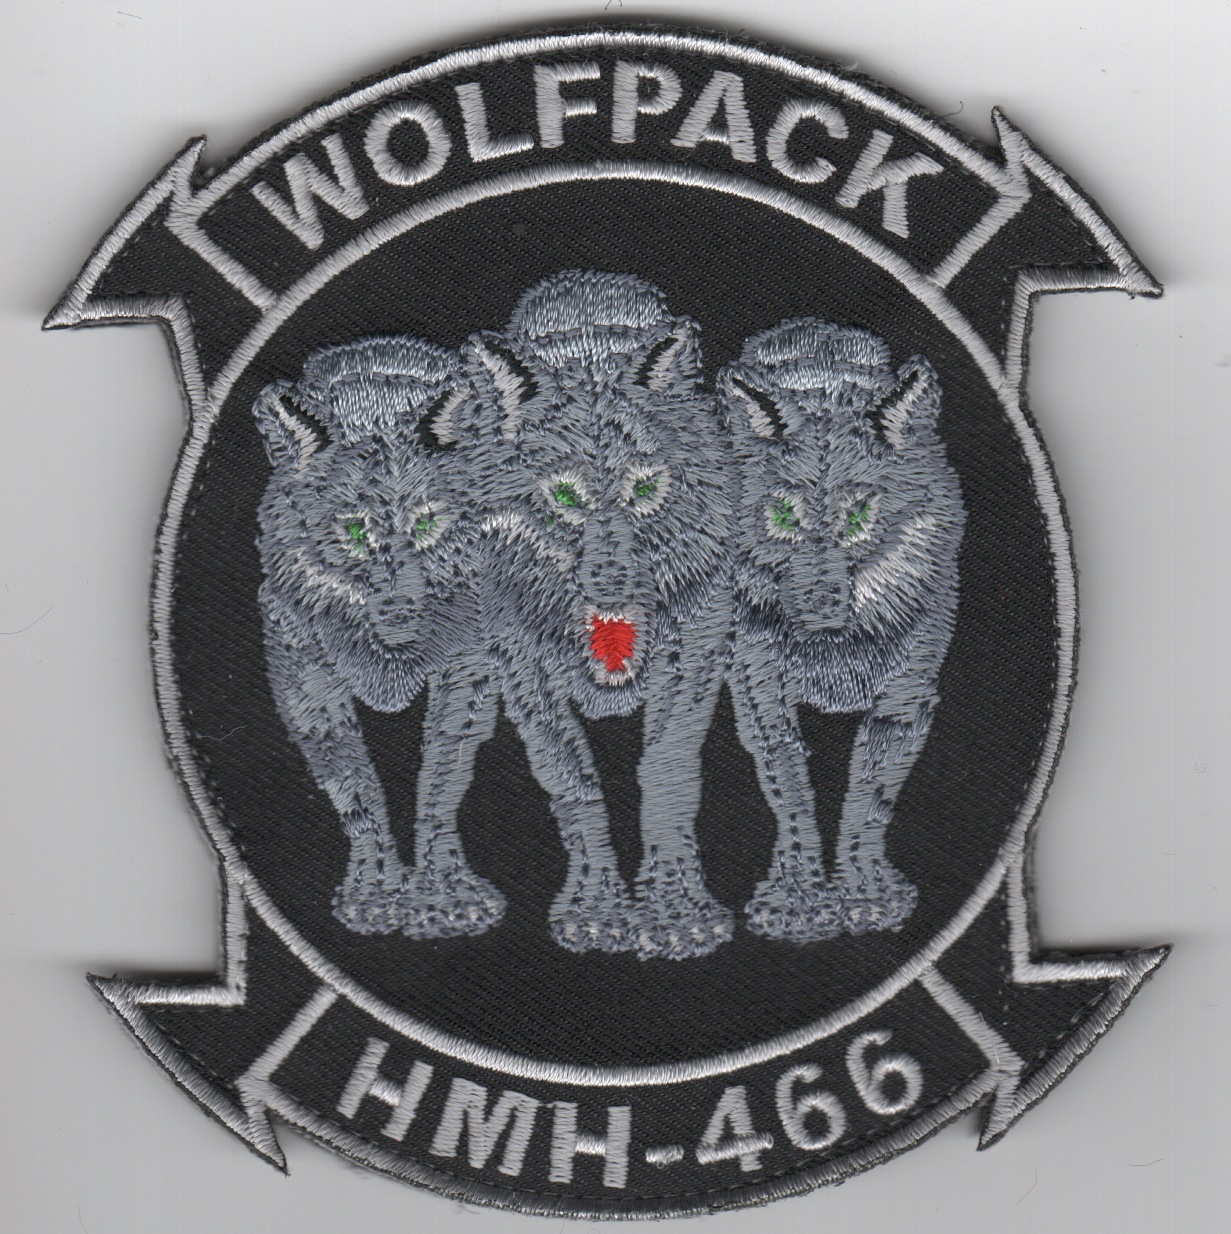 HMH-466 '3-Wolves' Squadron Patch (Black)